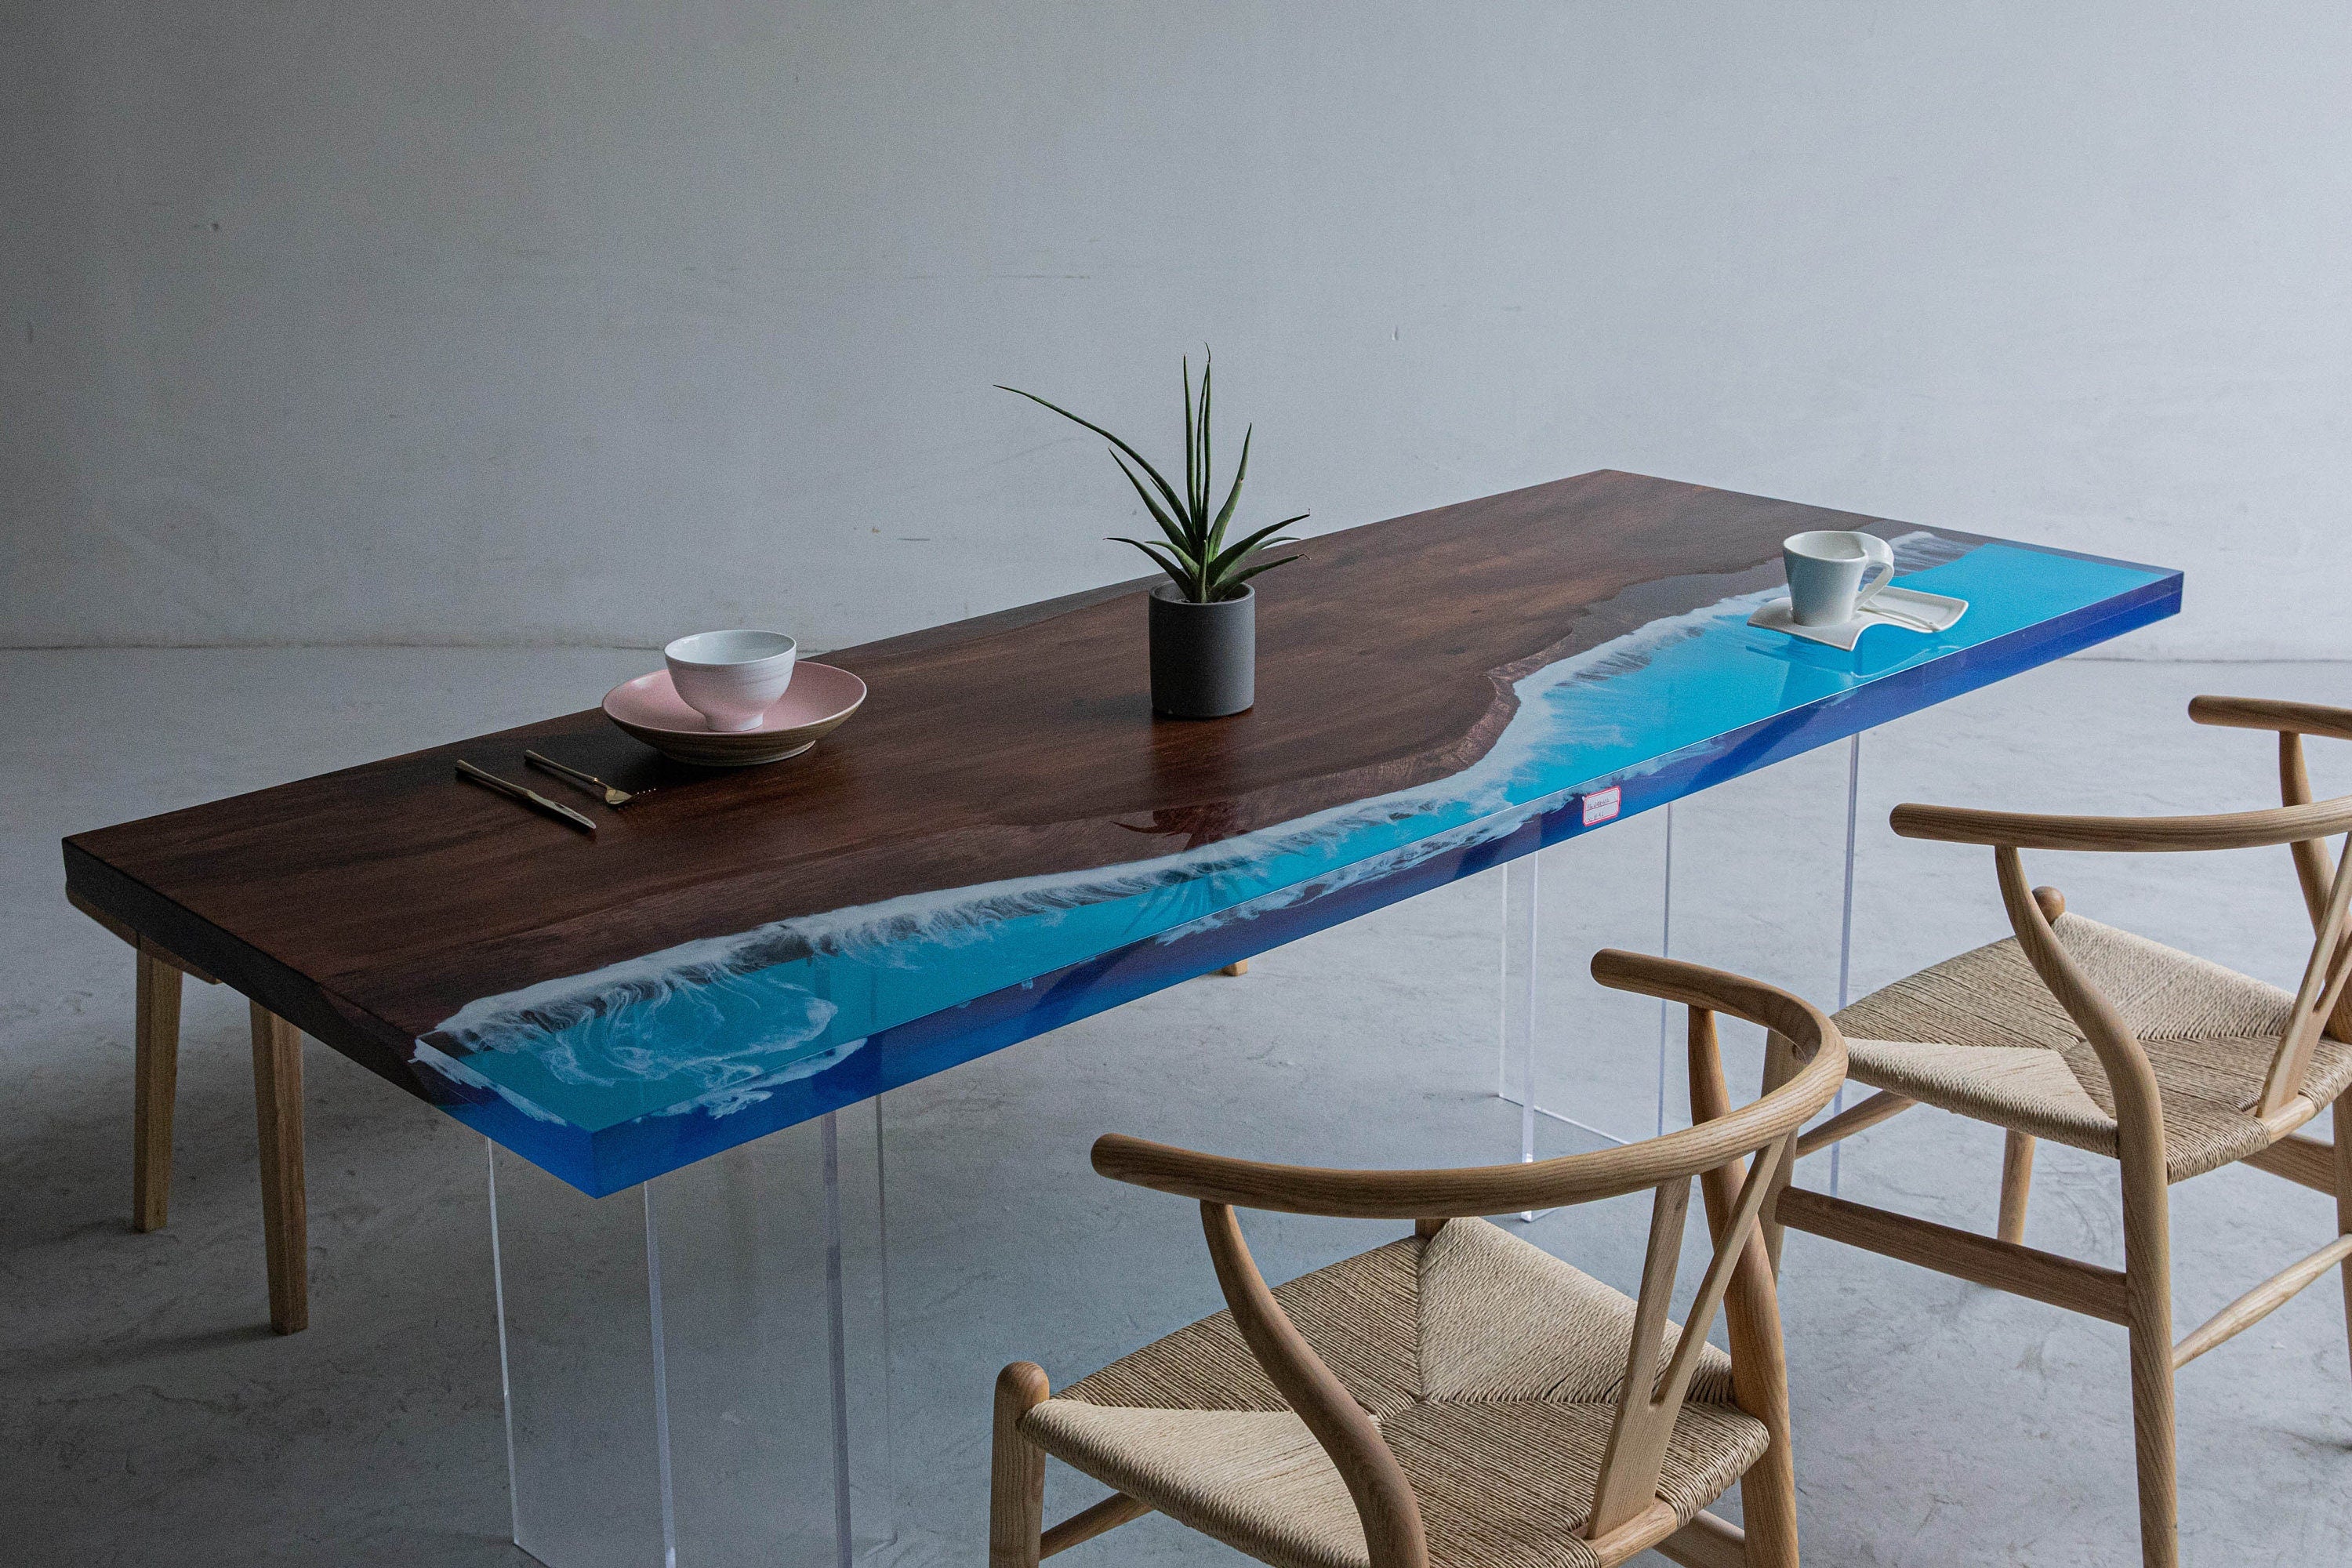 طاولة إيبوكسي النهر الأزرق، طاولة إيبوكسي اللون الأزرق، طاولة النهر.